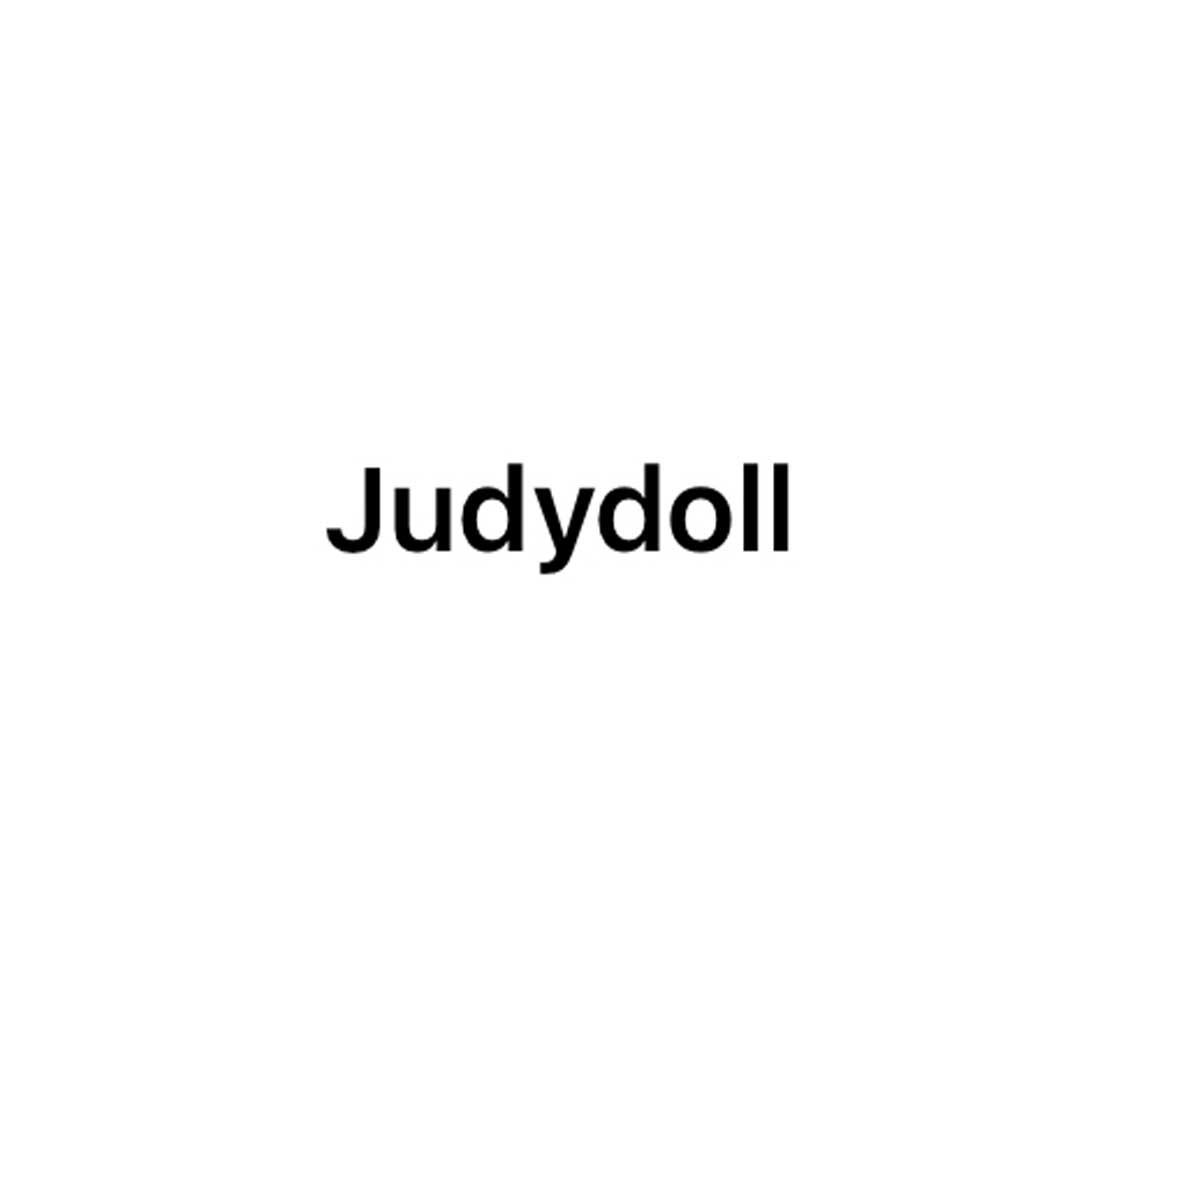 JUDYDOLL